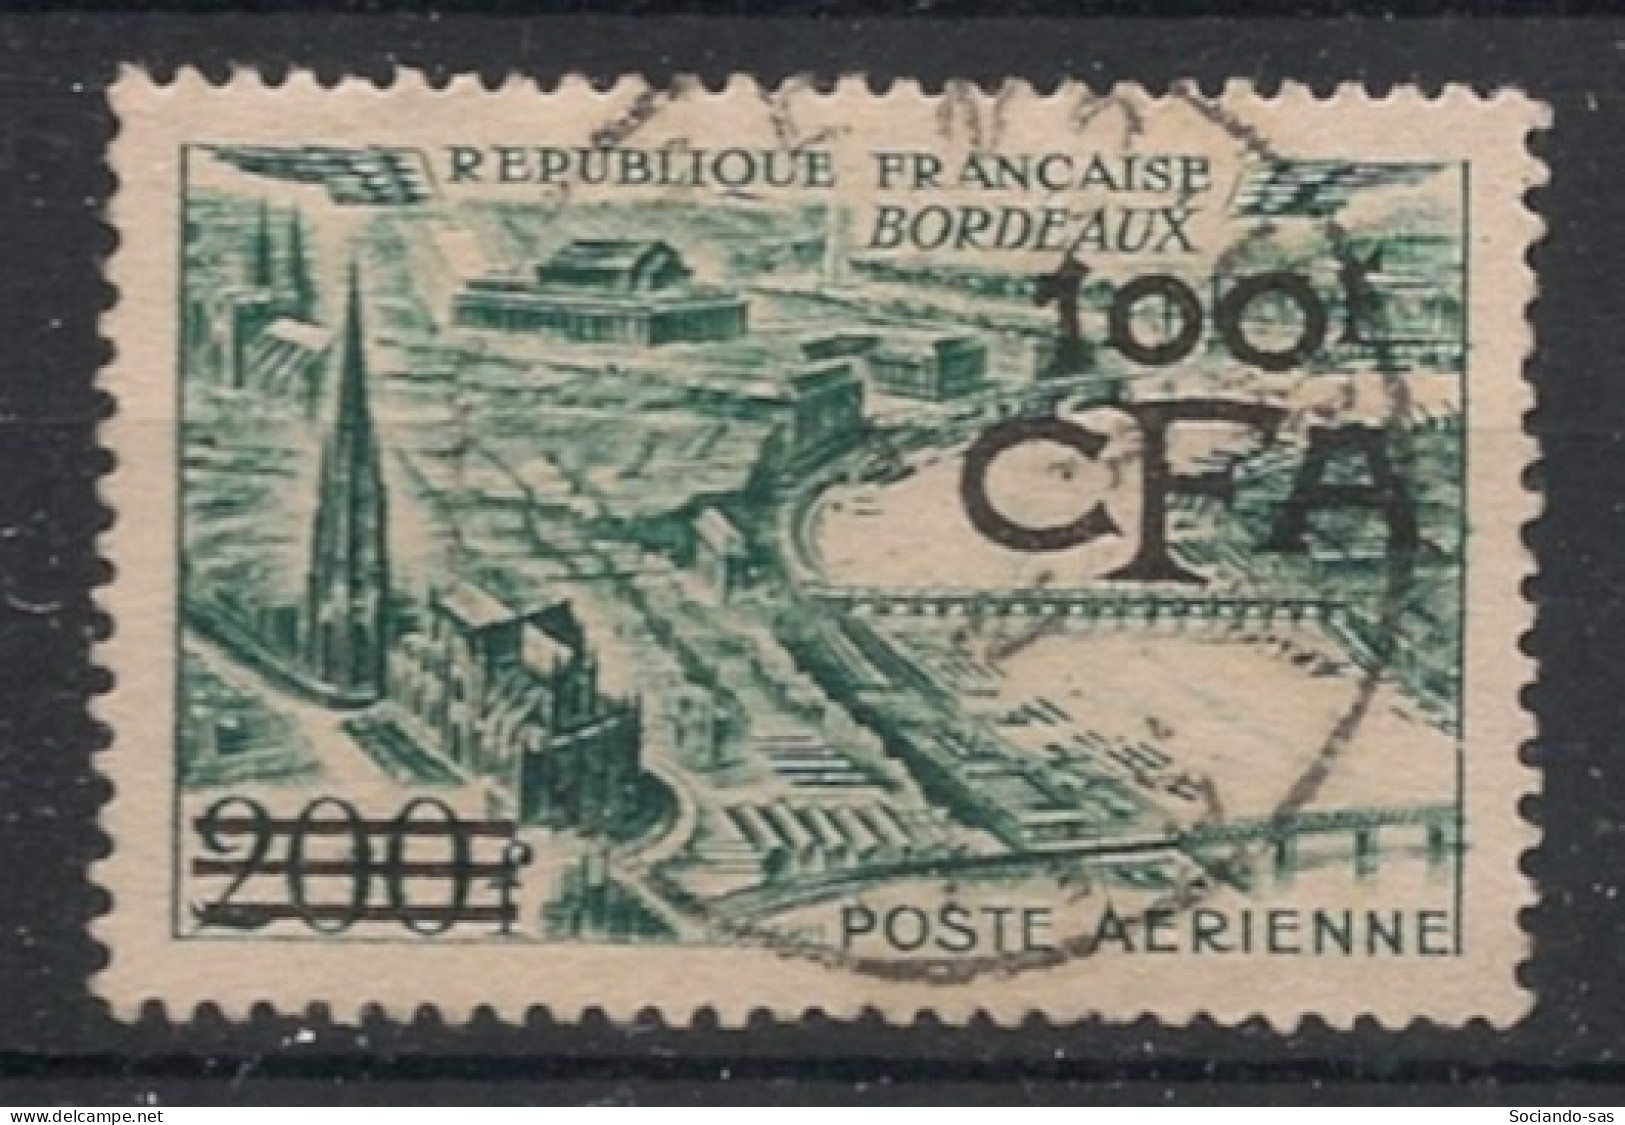 REUNION - 1951 - Poste Aérienne PA N°YT. 49 - Bordeaux 100f Sur 200f - Oblitéré / Used - Aéreo